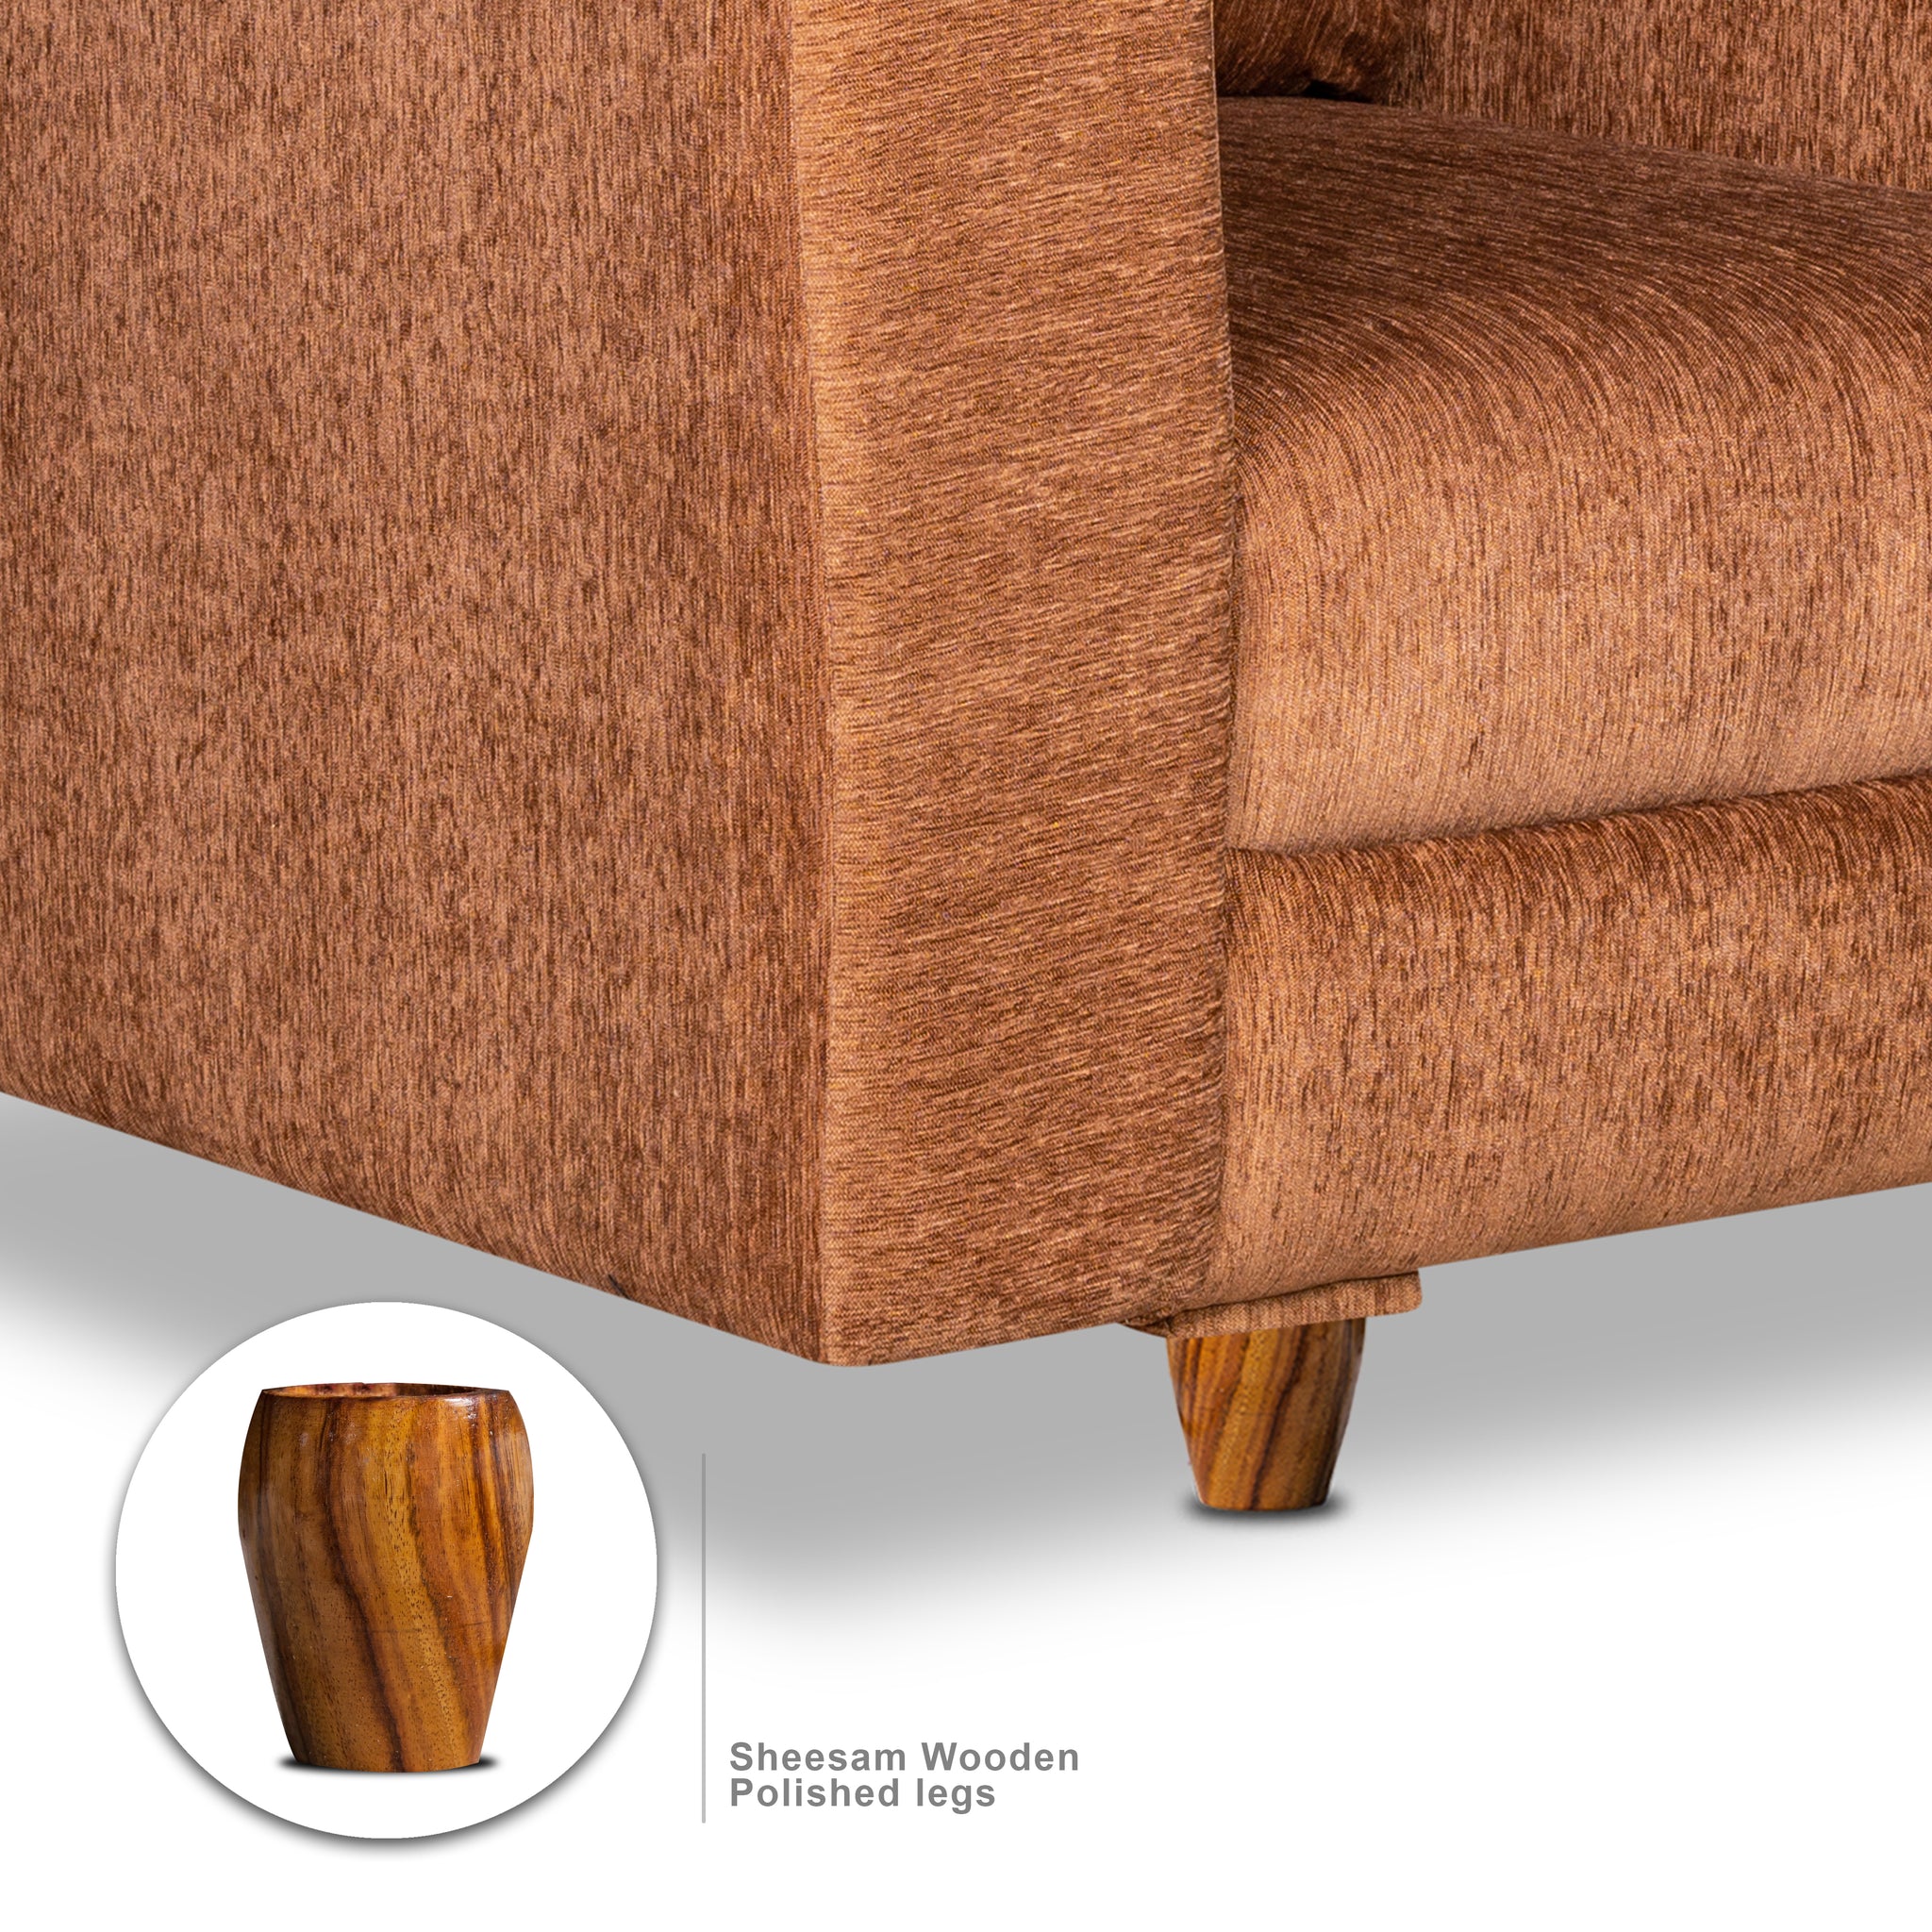 Rio 5 Seater Sofa Set, Chenille Molfino Fabric (Finish Color -Beige, Style - 3 + 1 + 1)